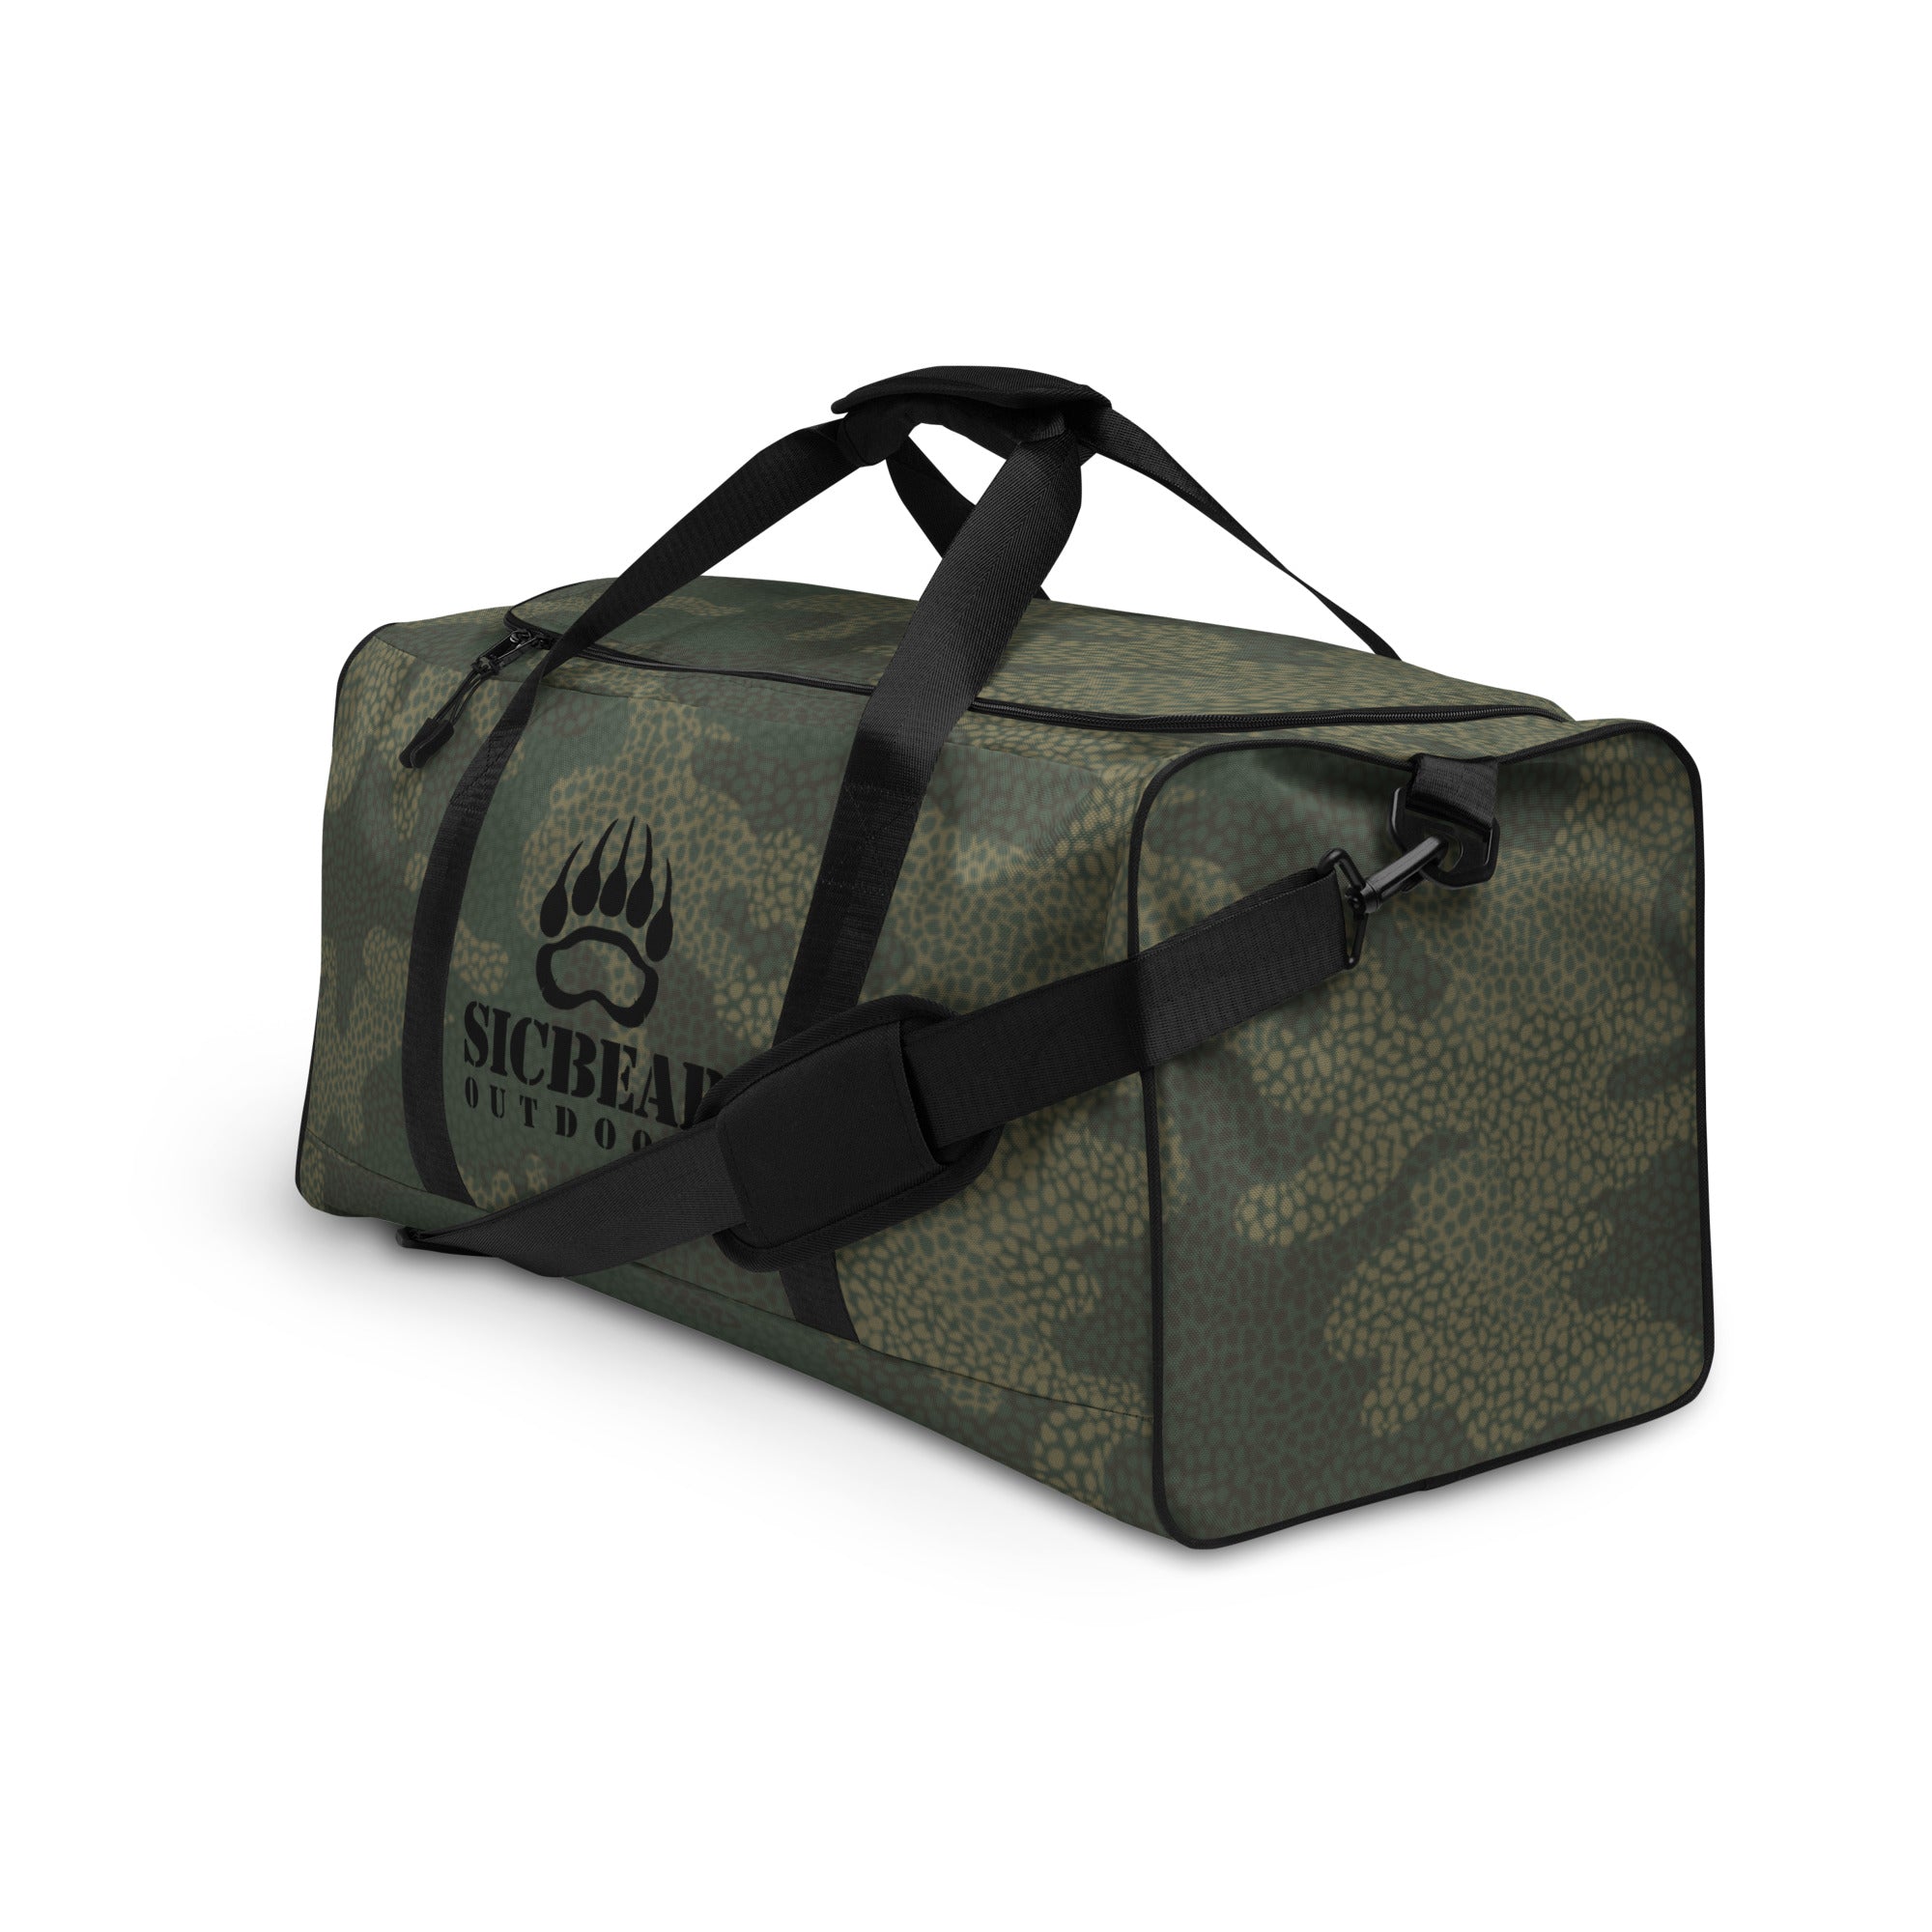 SICBEAR Duffle bag w/ Green Camo